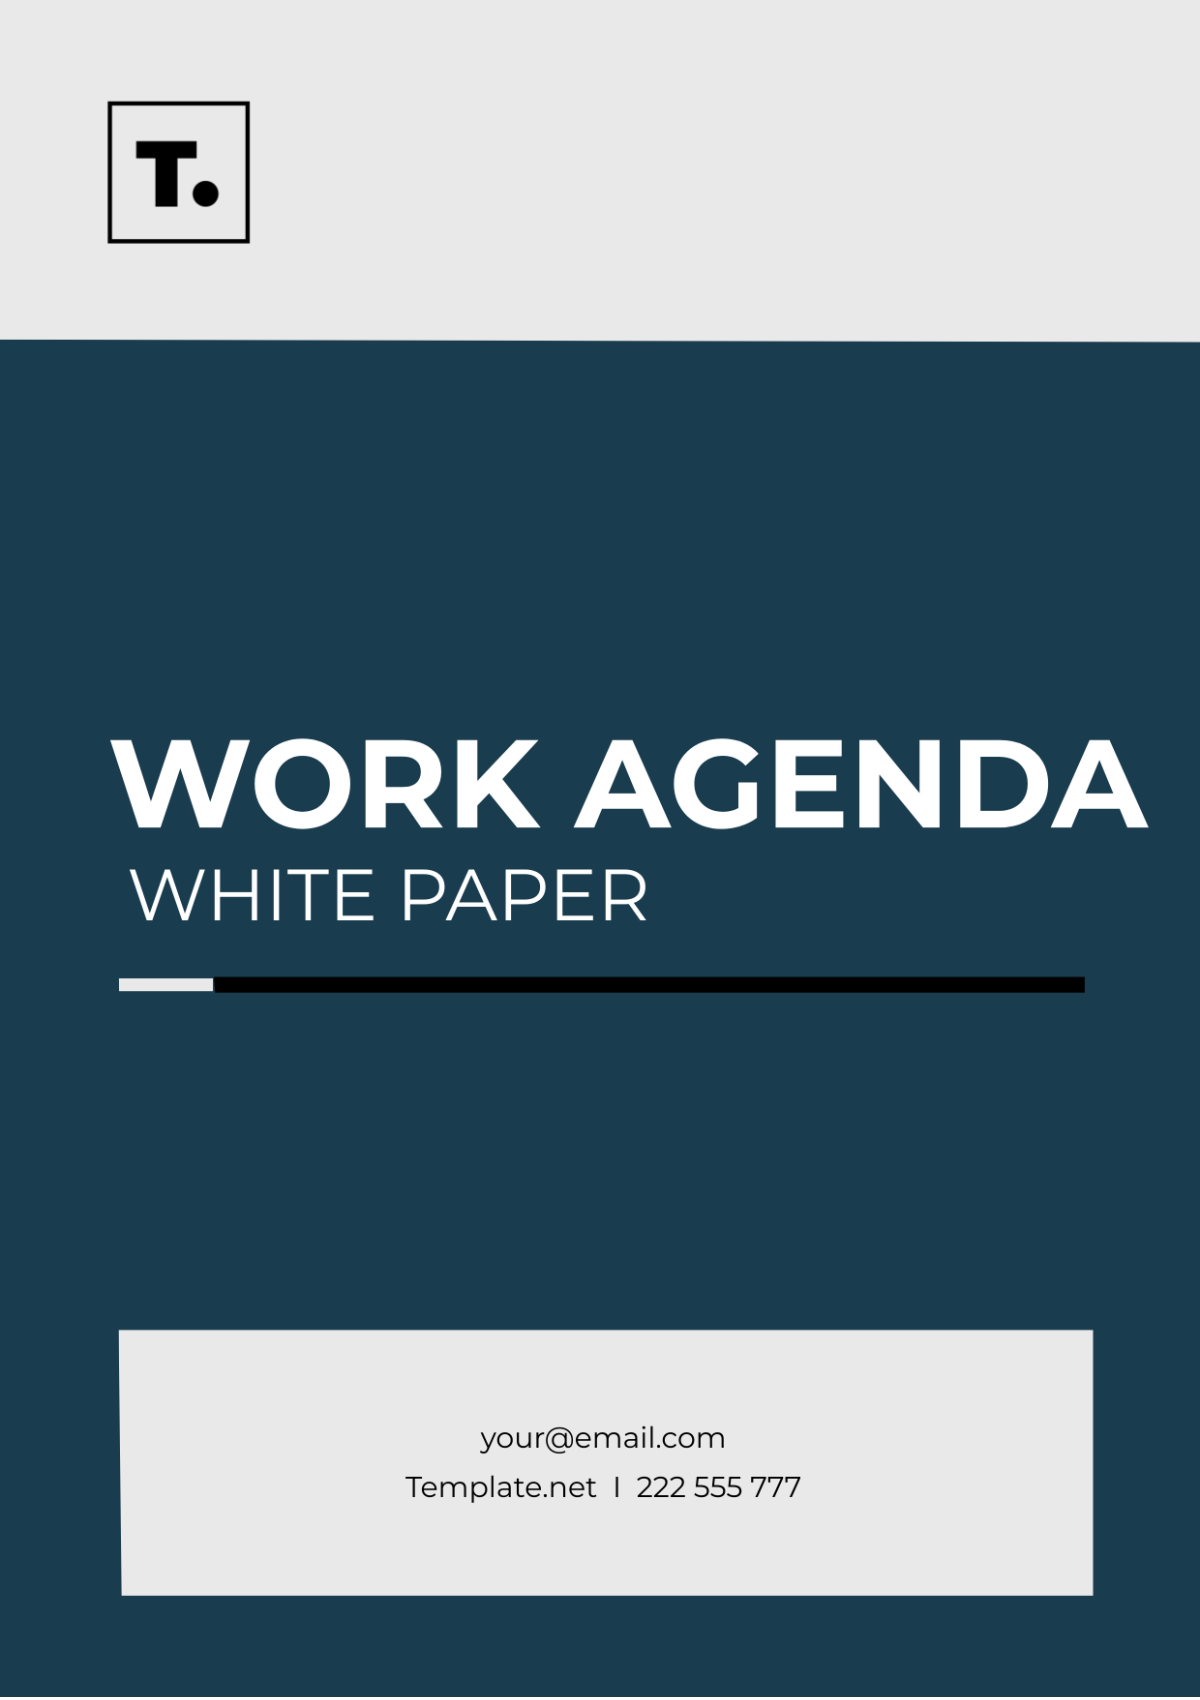 Work Agenda White Paper Template